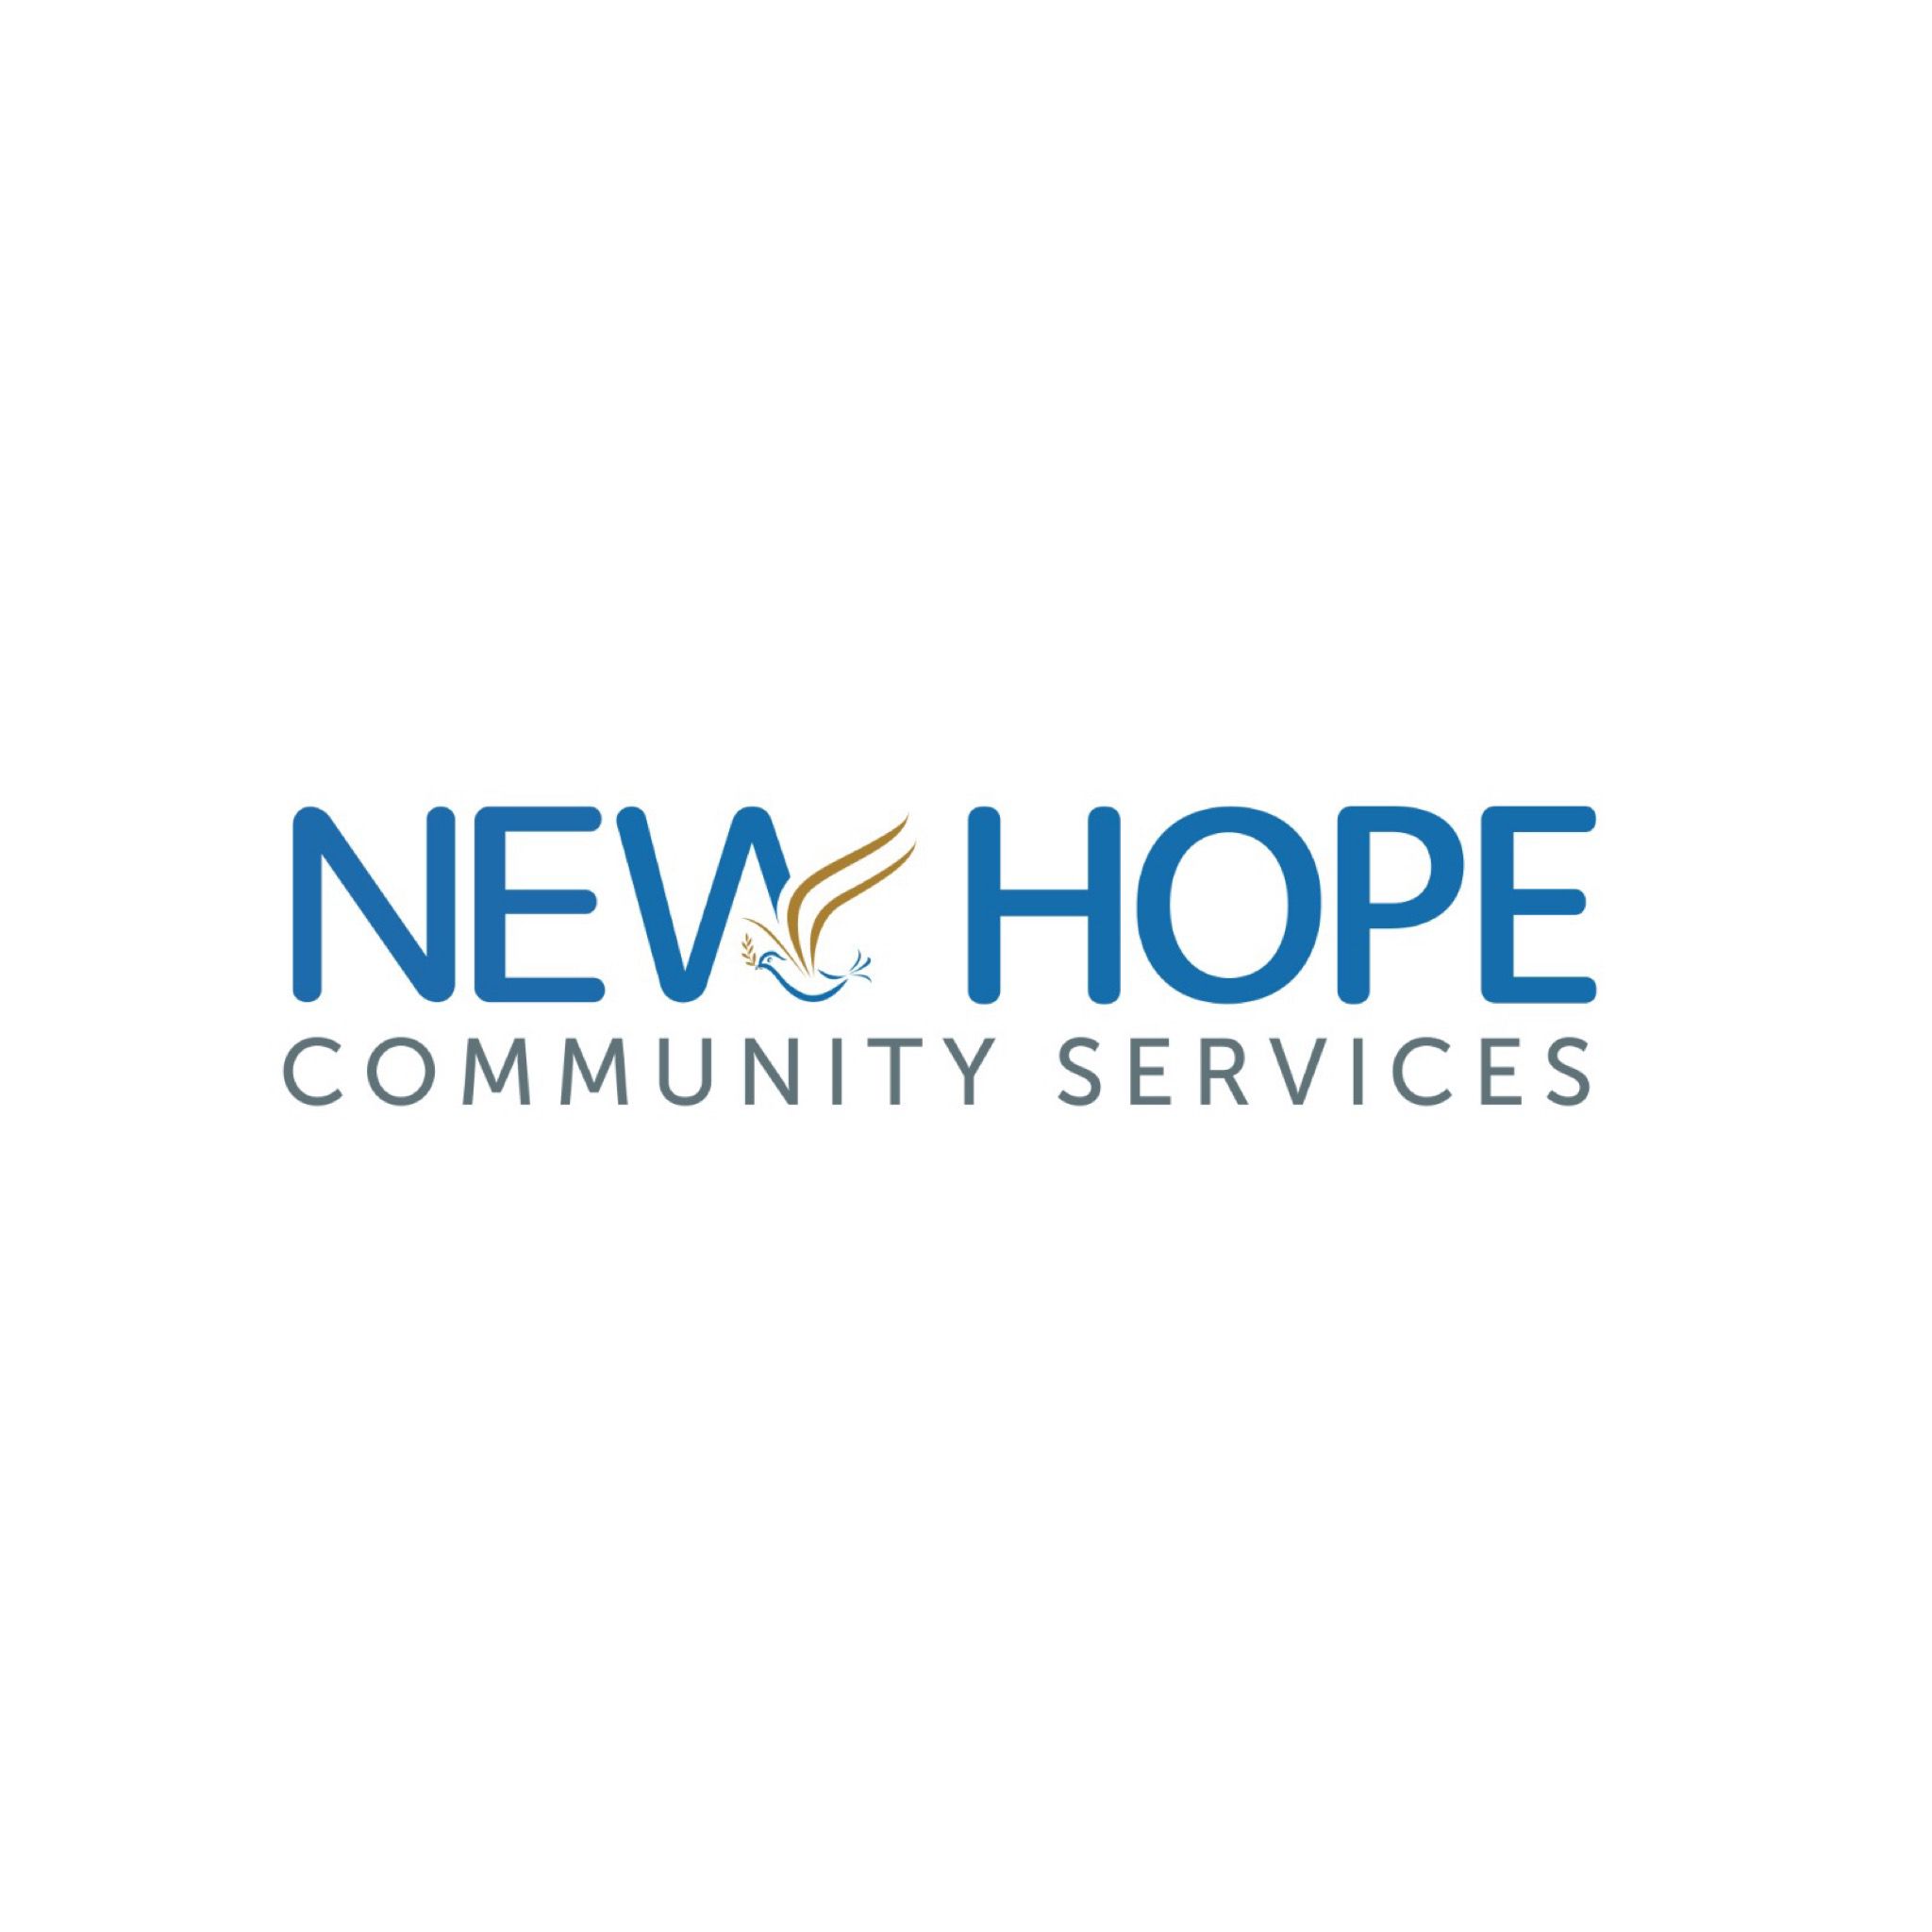 New Hope Community Services company logo